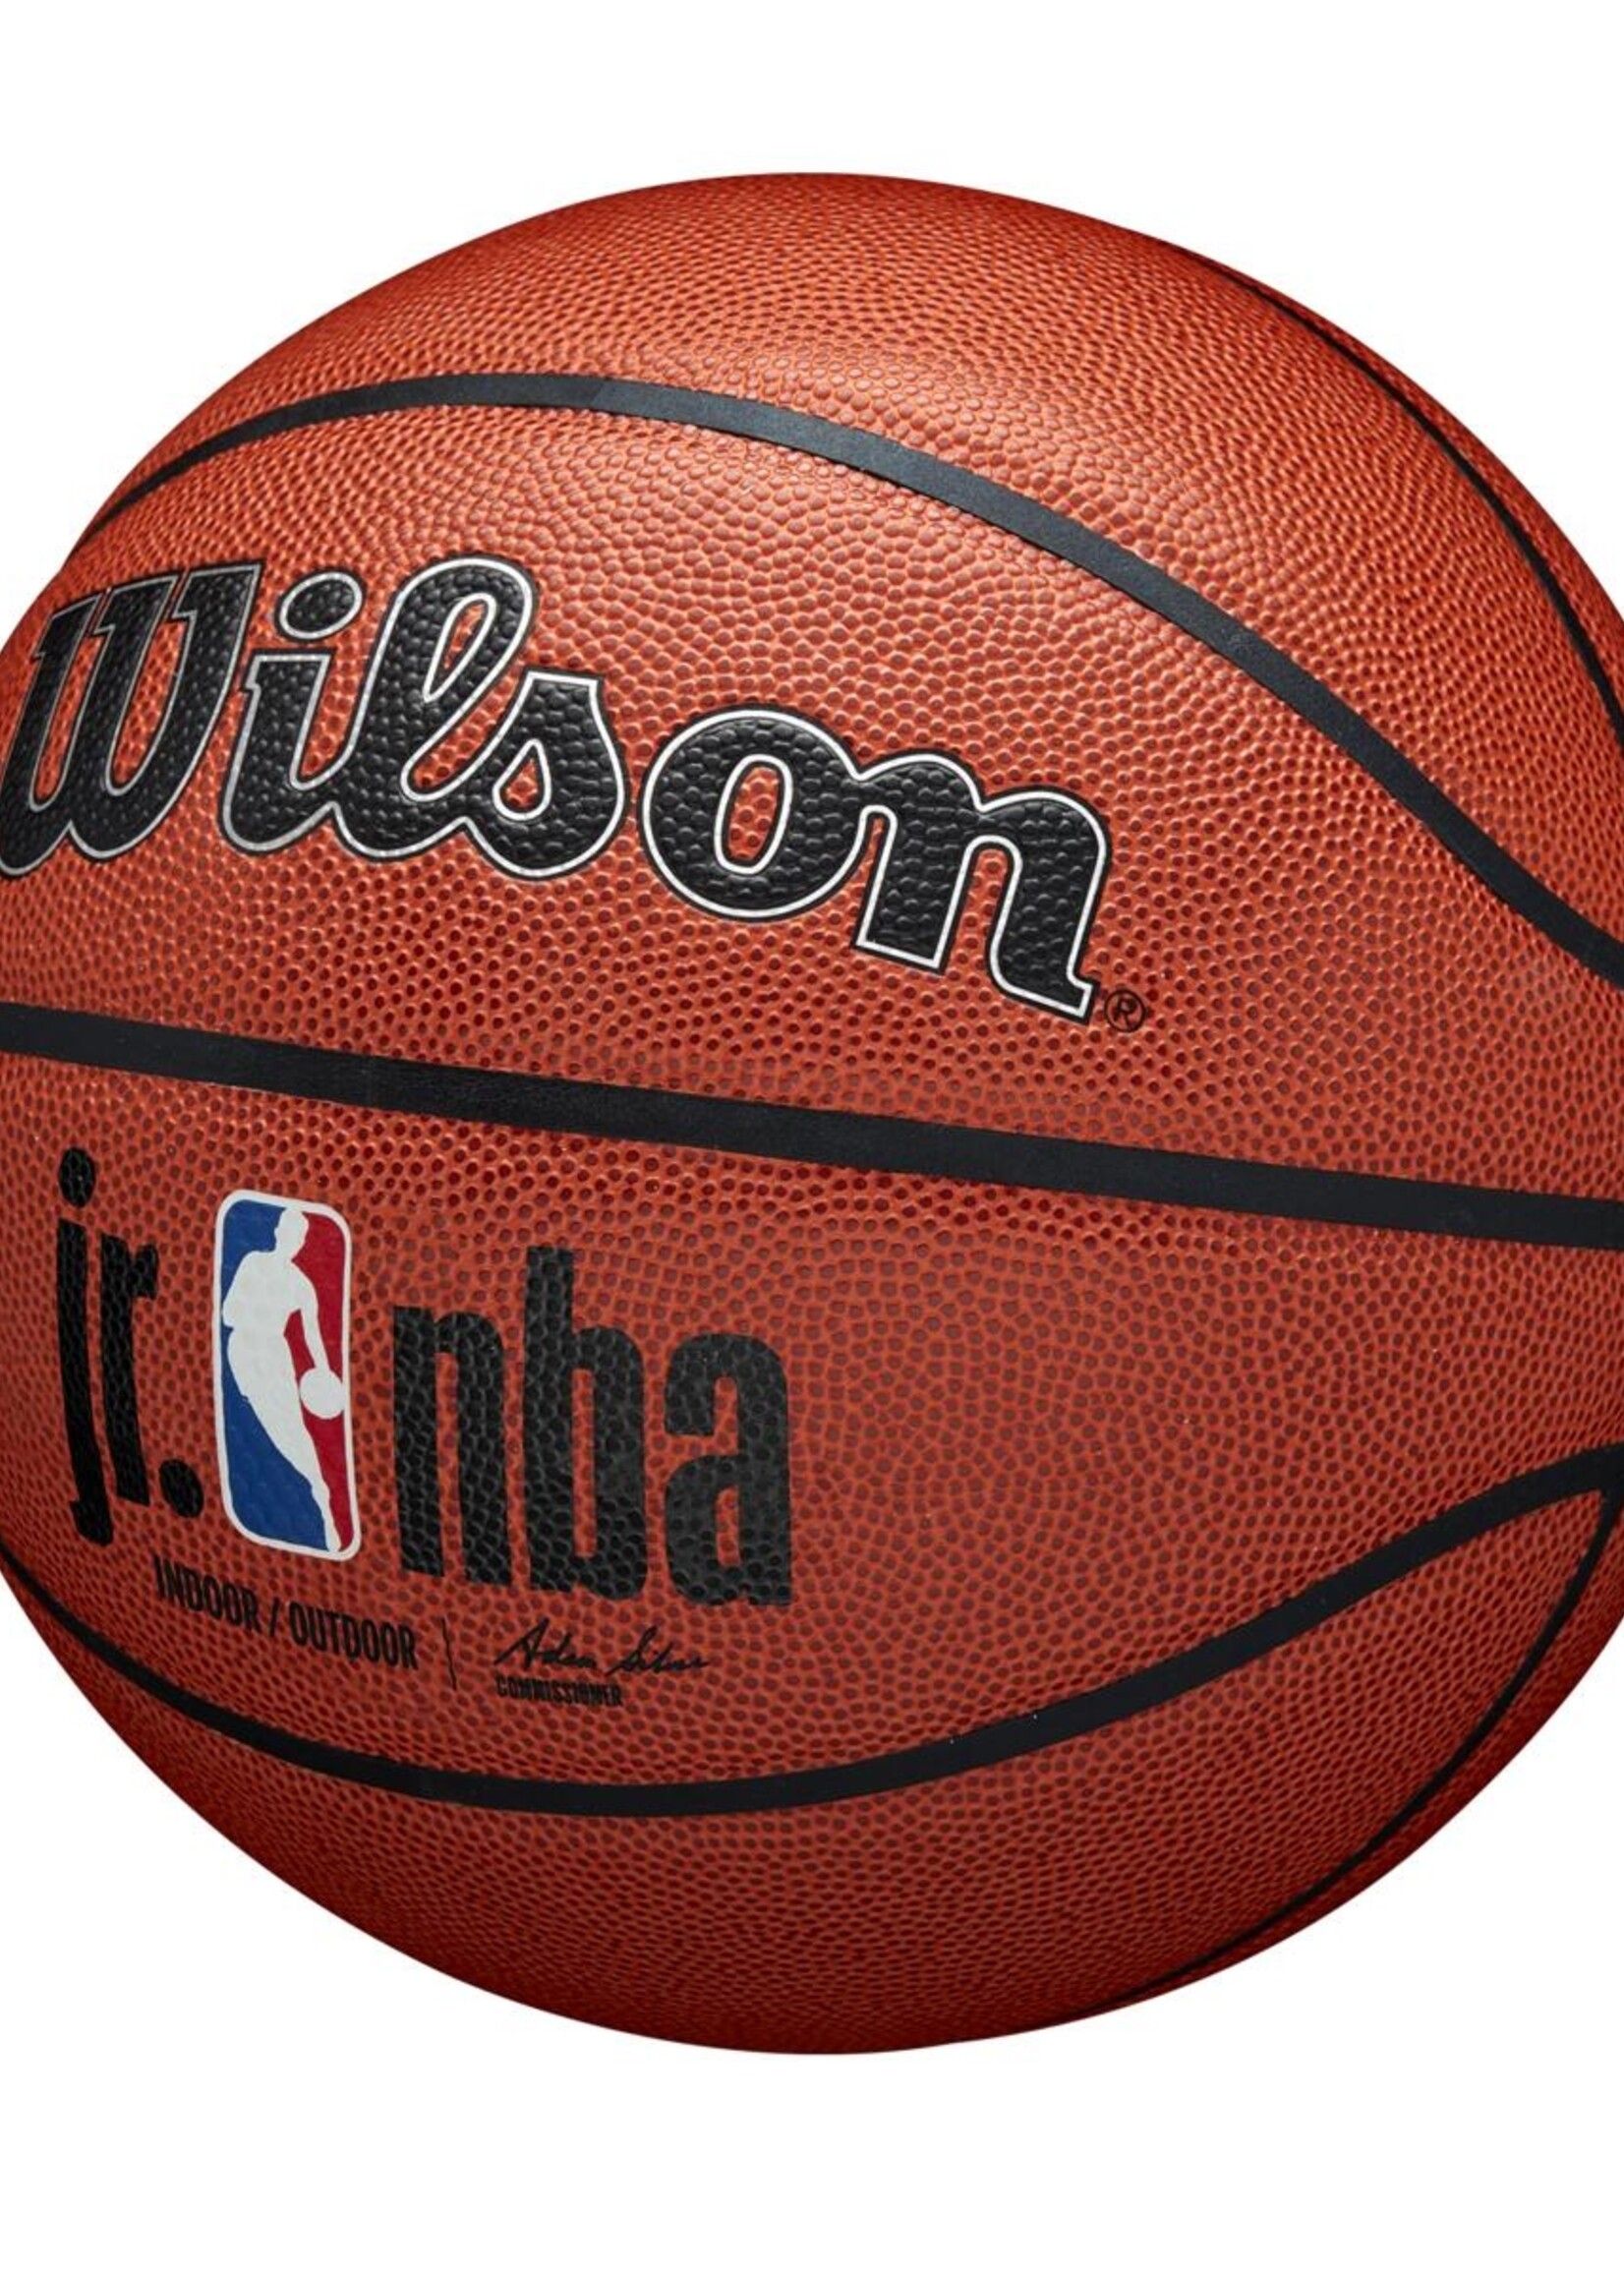 Wilson Wilson JR NBA Authentic Indoor Outdoor Basketball (7)